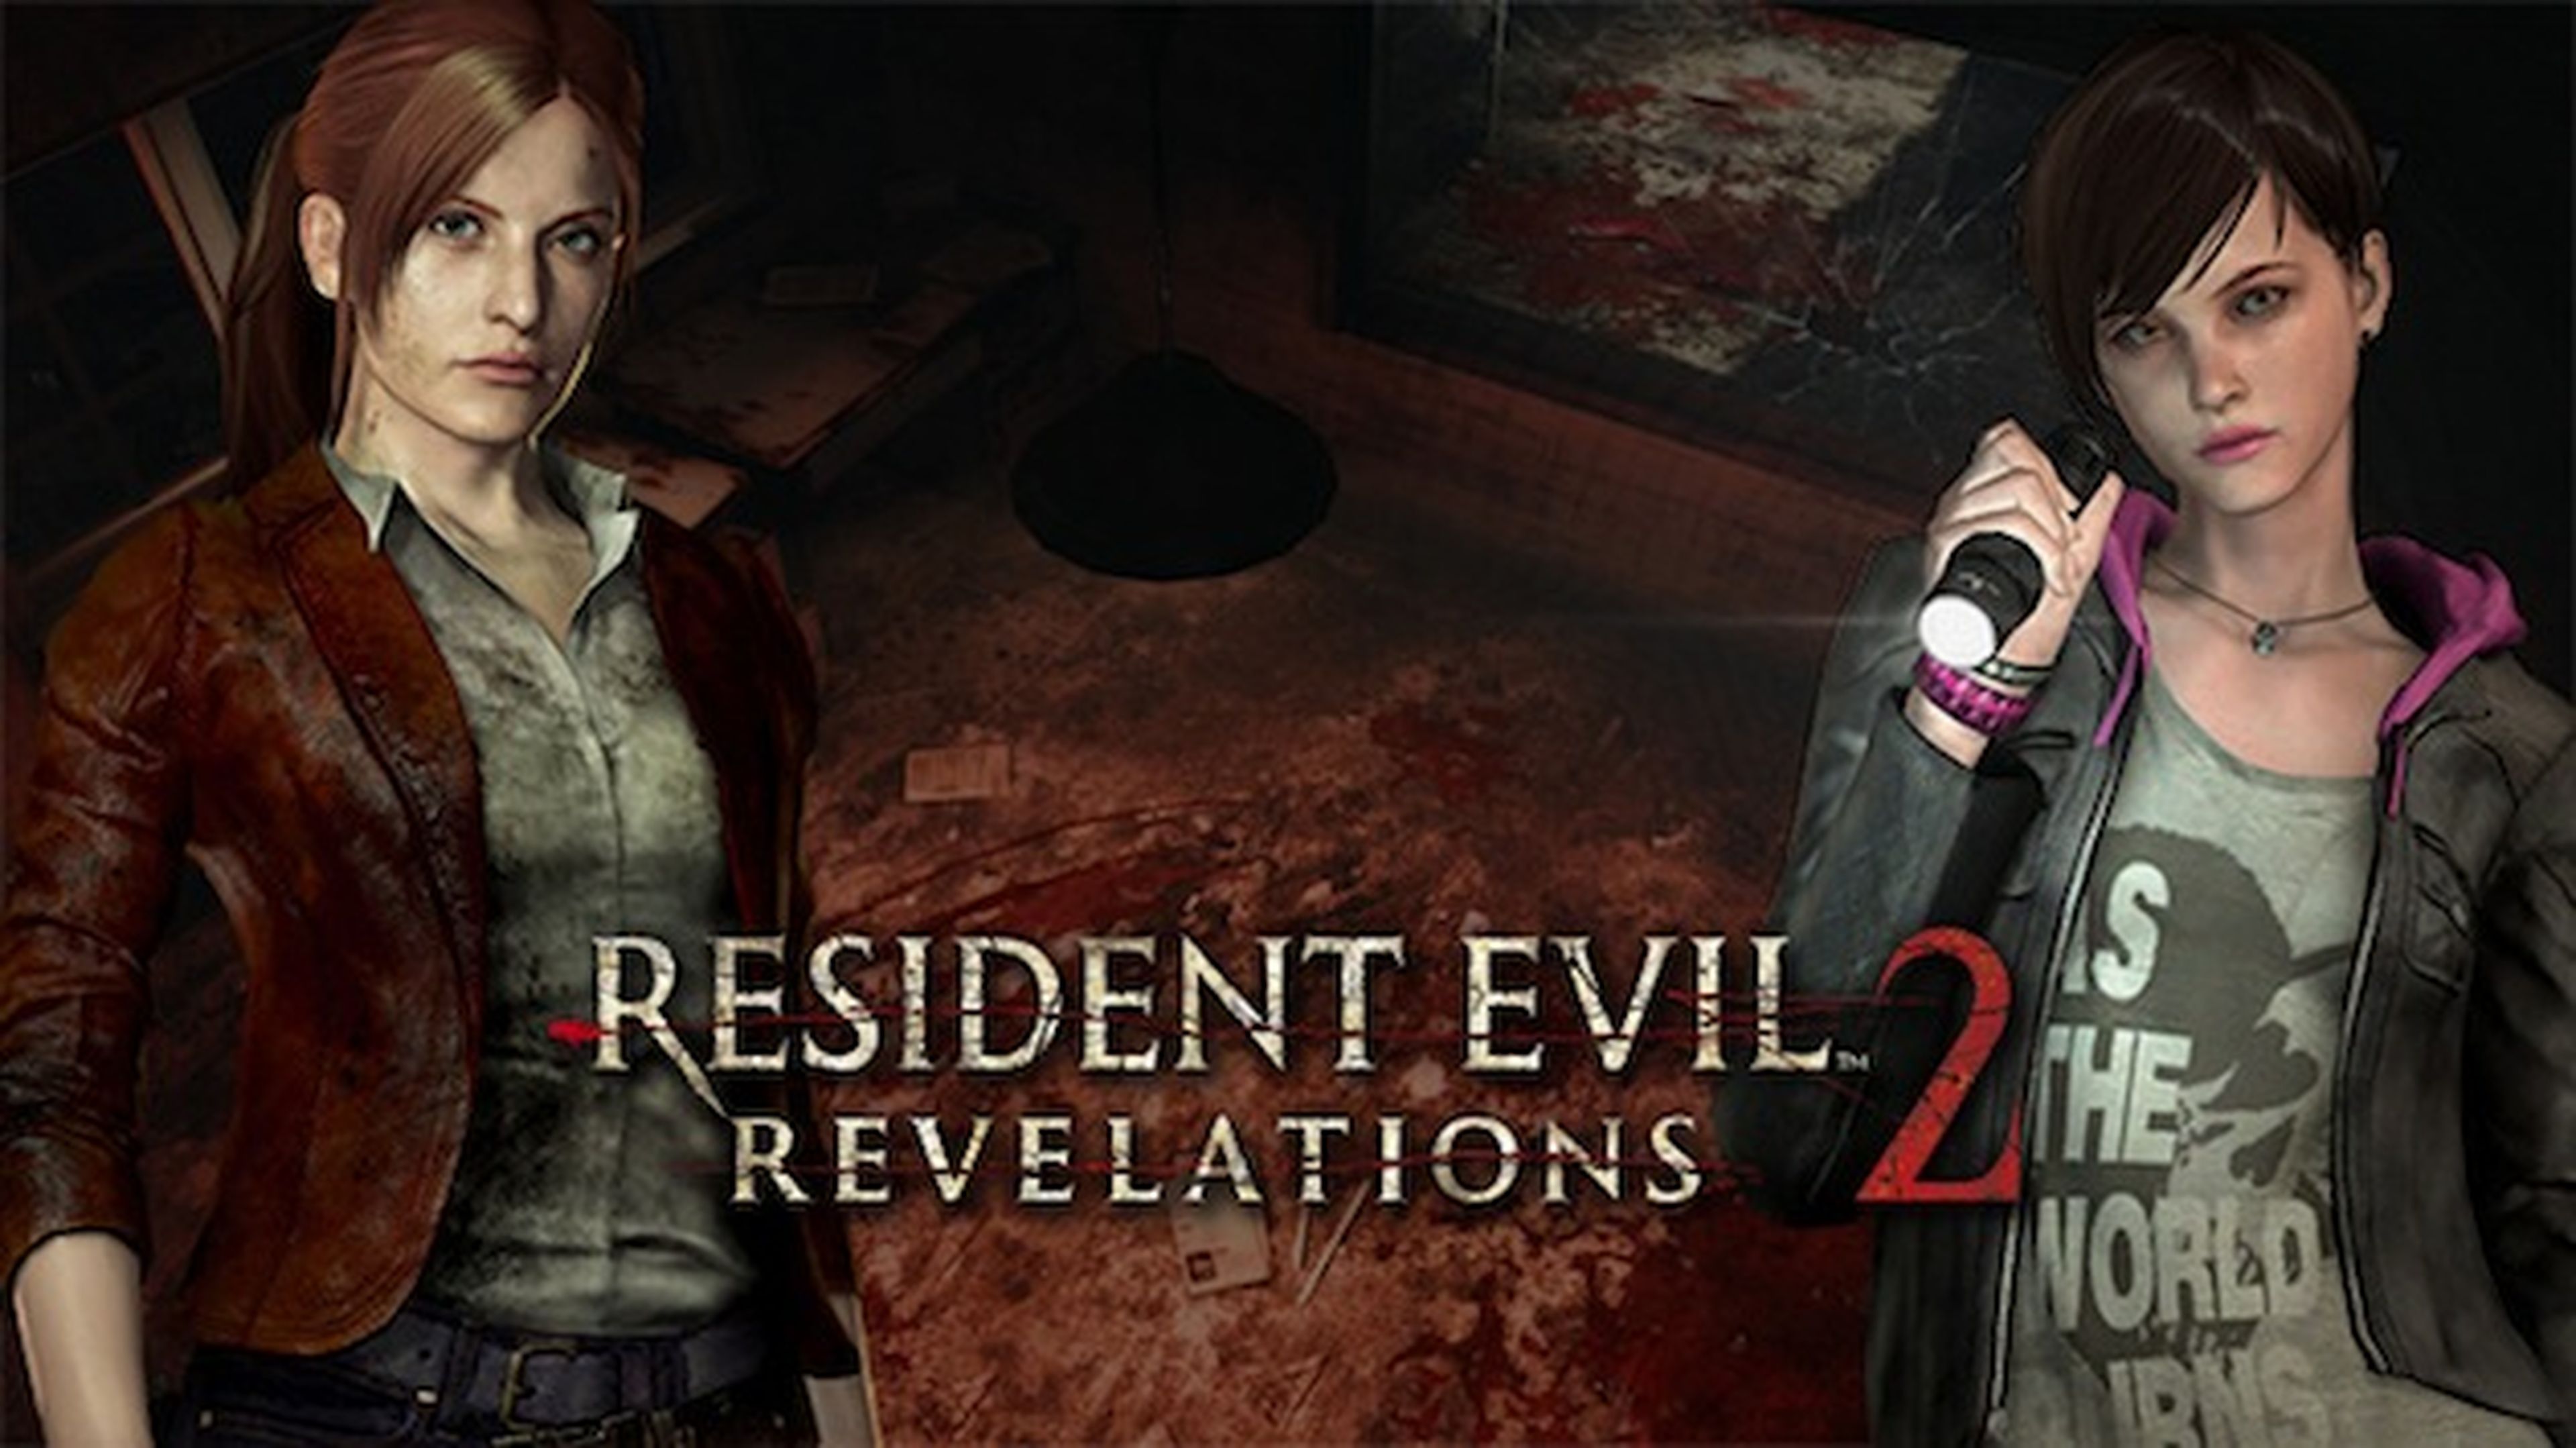 Trofeos en vídeo para Resident Evil Revelations 2